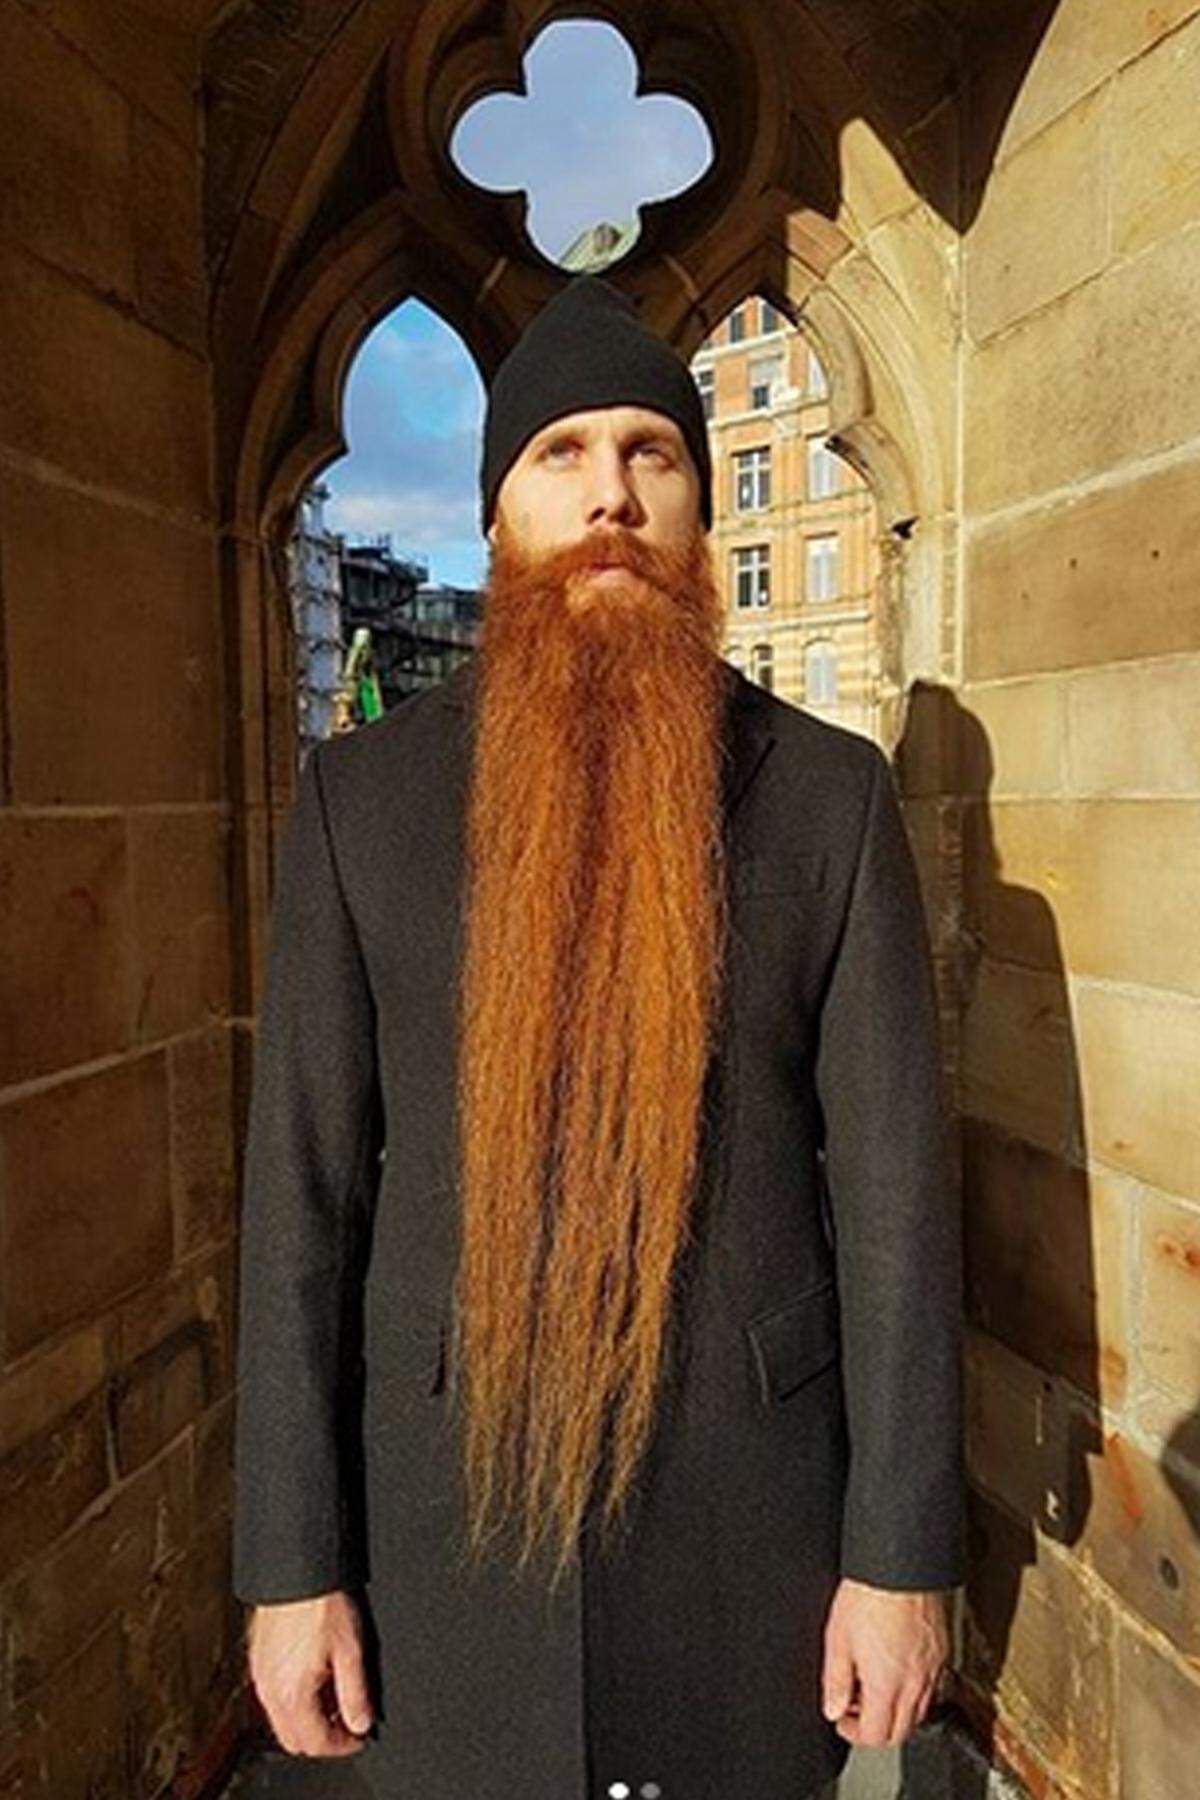 Dass sich lange Haare nicht nur auf dem Kopf gut machen, zeigt Viktor Erik Jensen aus dem schwedischen Lund auf seinem Instagram-Account. Sein roter Rauschebart, der seit 2013 keinen Rasierapparat mehr gesehen hat, hängt ihm mittlerweile bis über den Bauchnabel. Über 3000 Bart-Fans erfreuen sich an seiner Gesichtsbehaarung.